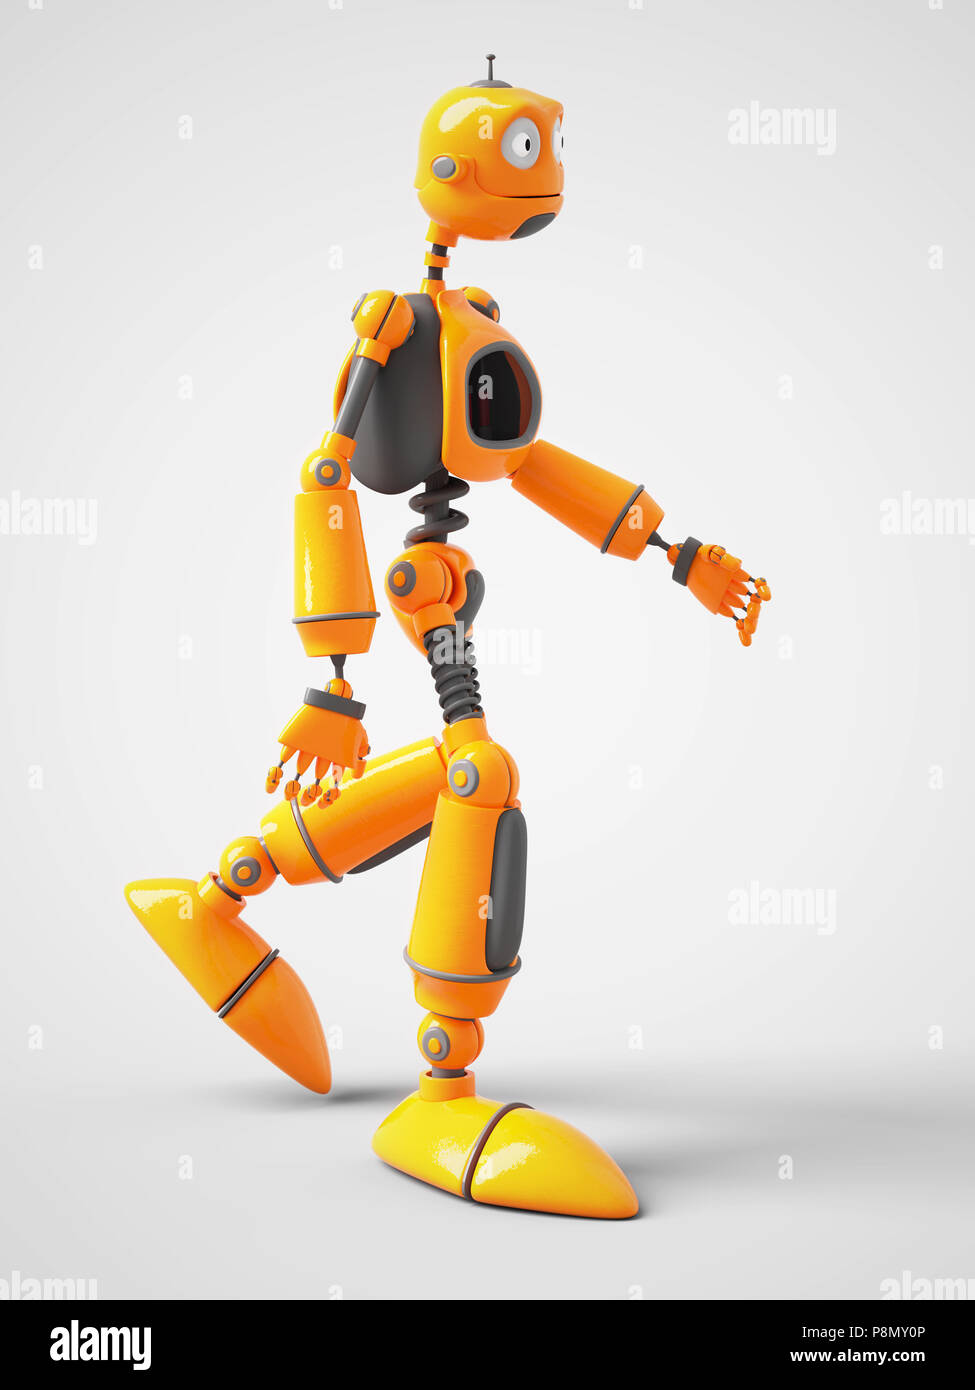 Le rendu 3D d'un robot de dessin animé jaune marche à pied. Arrière-plan blanc. Banque D'Images